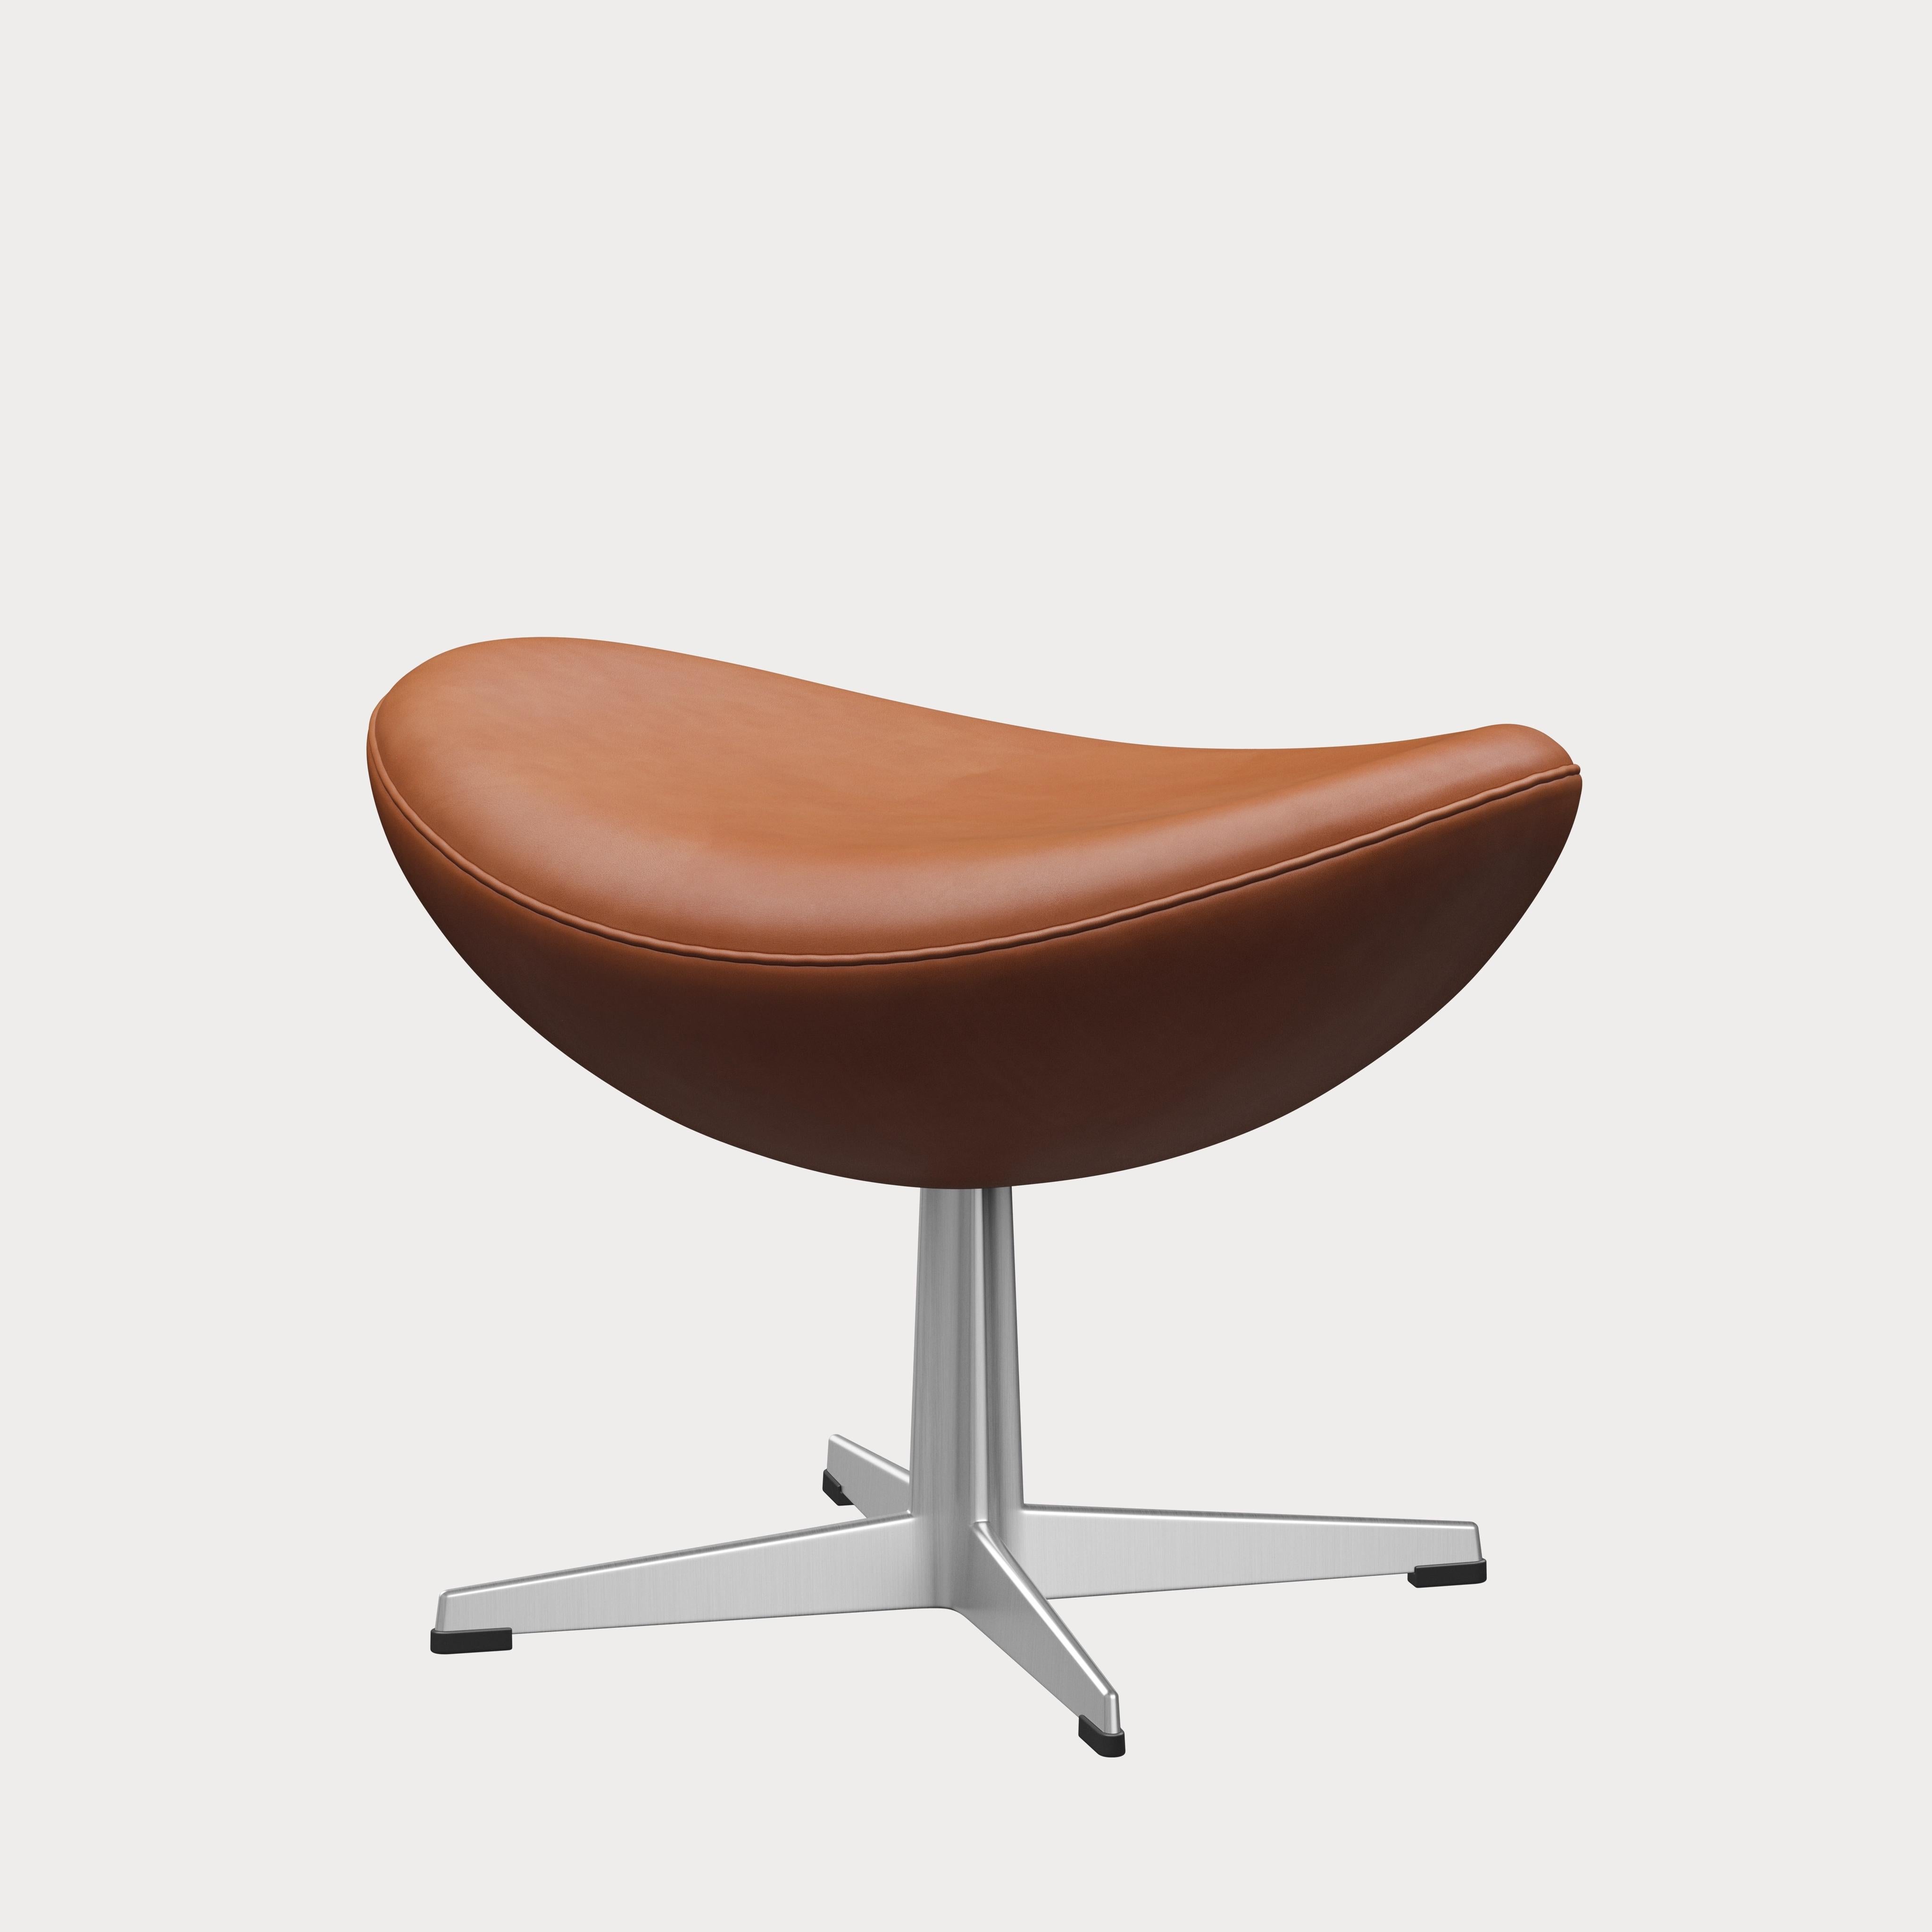 Arne Jacobsen 'Egg' Footstool for Fritz Hansen in Leather Upholstery (Cat. 5) For Sale 4